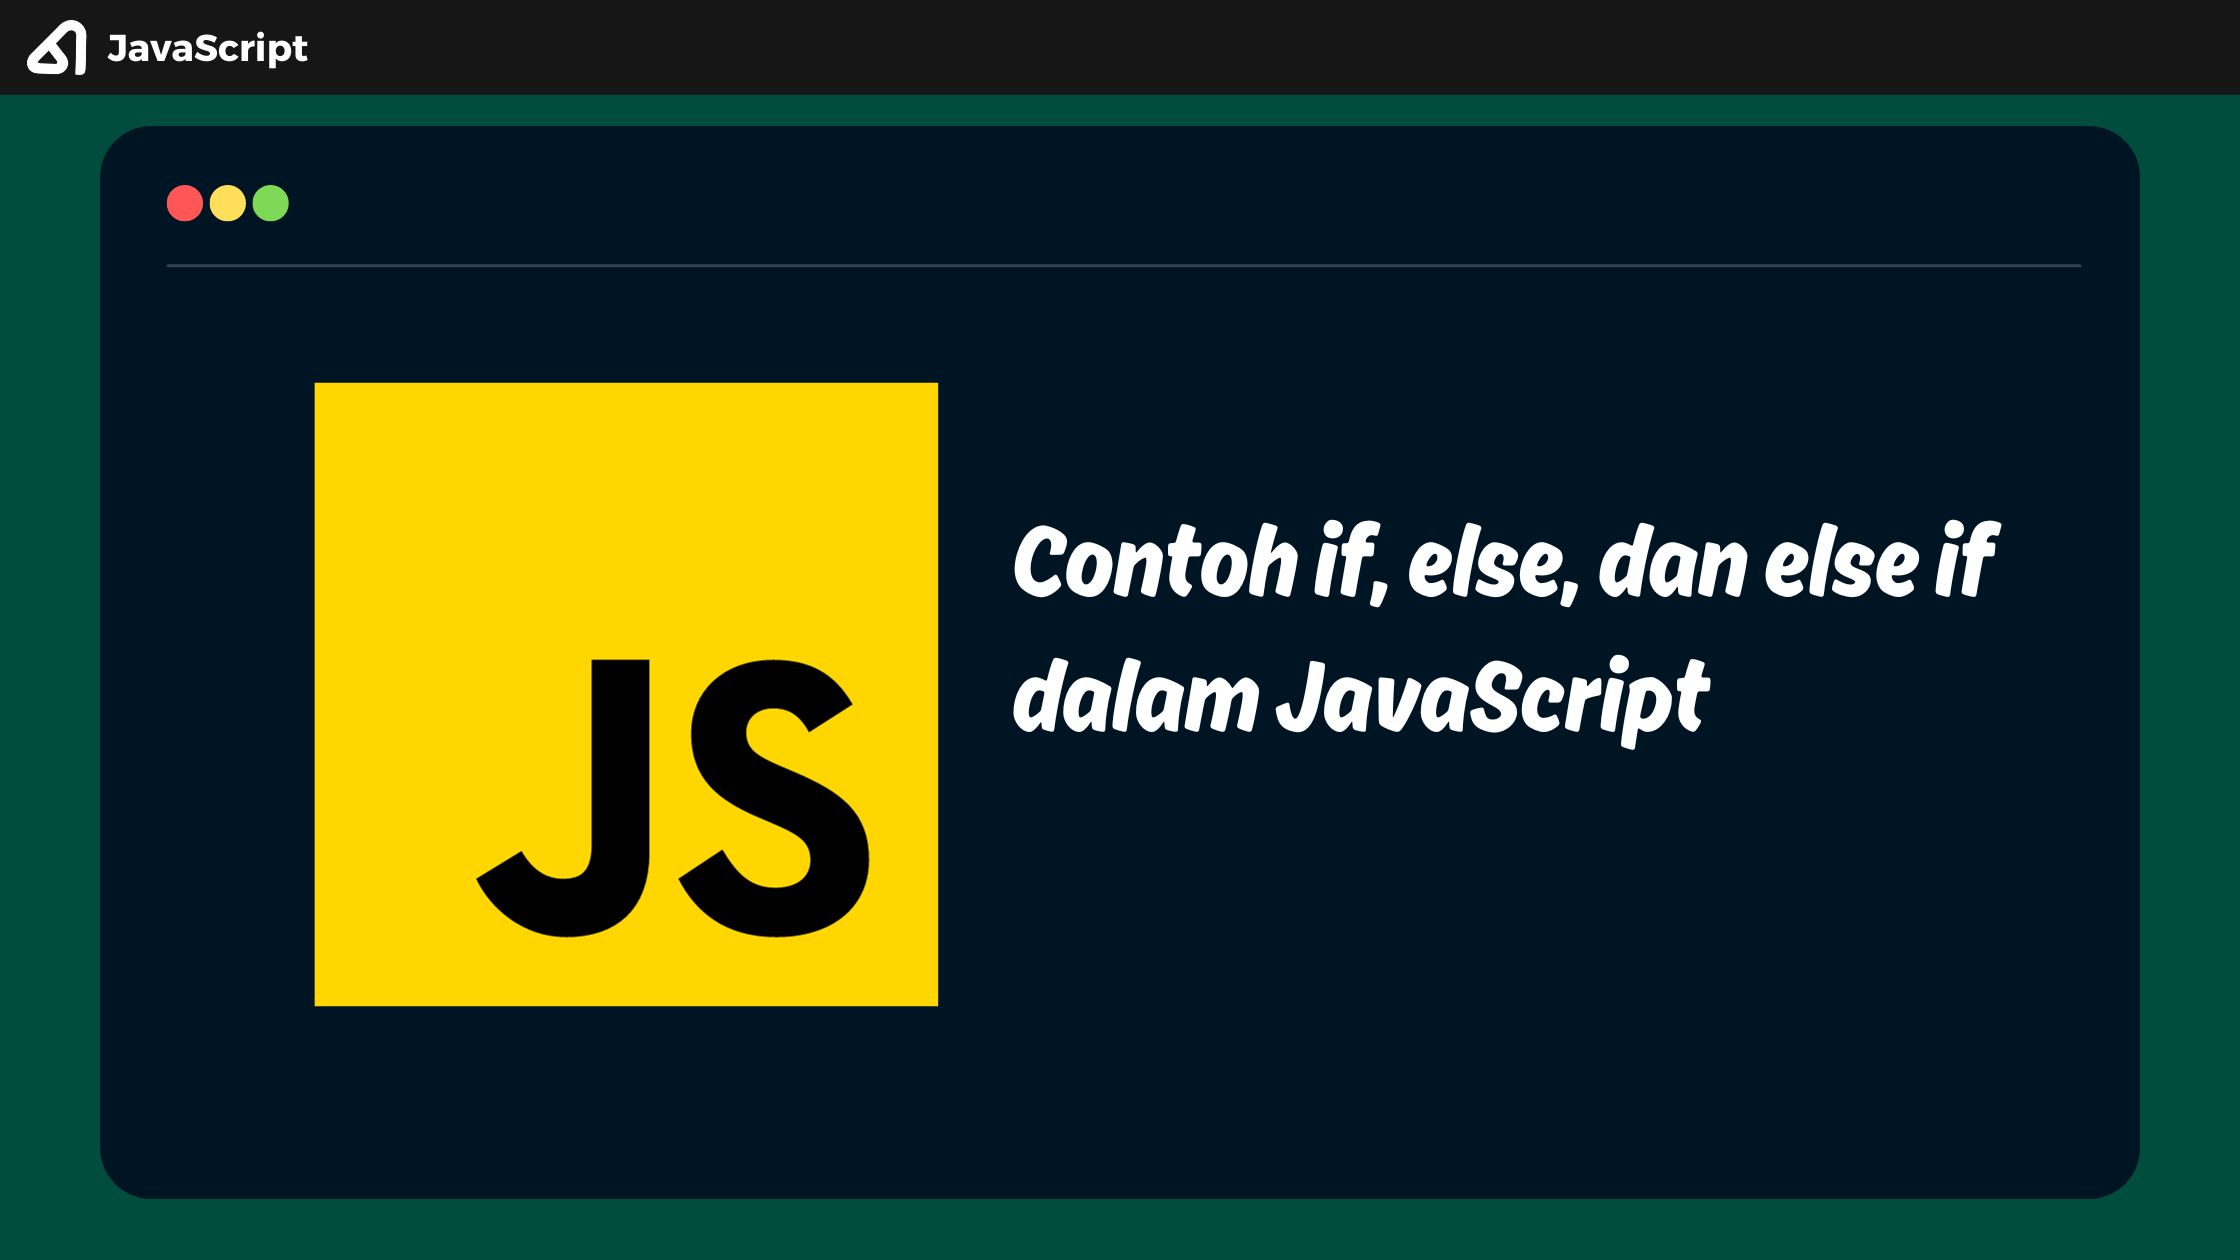 Contoh if, else, dan else if dalam JavaScript